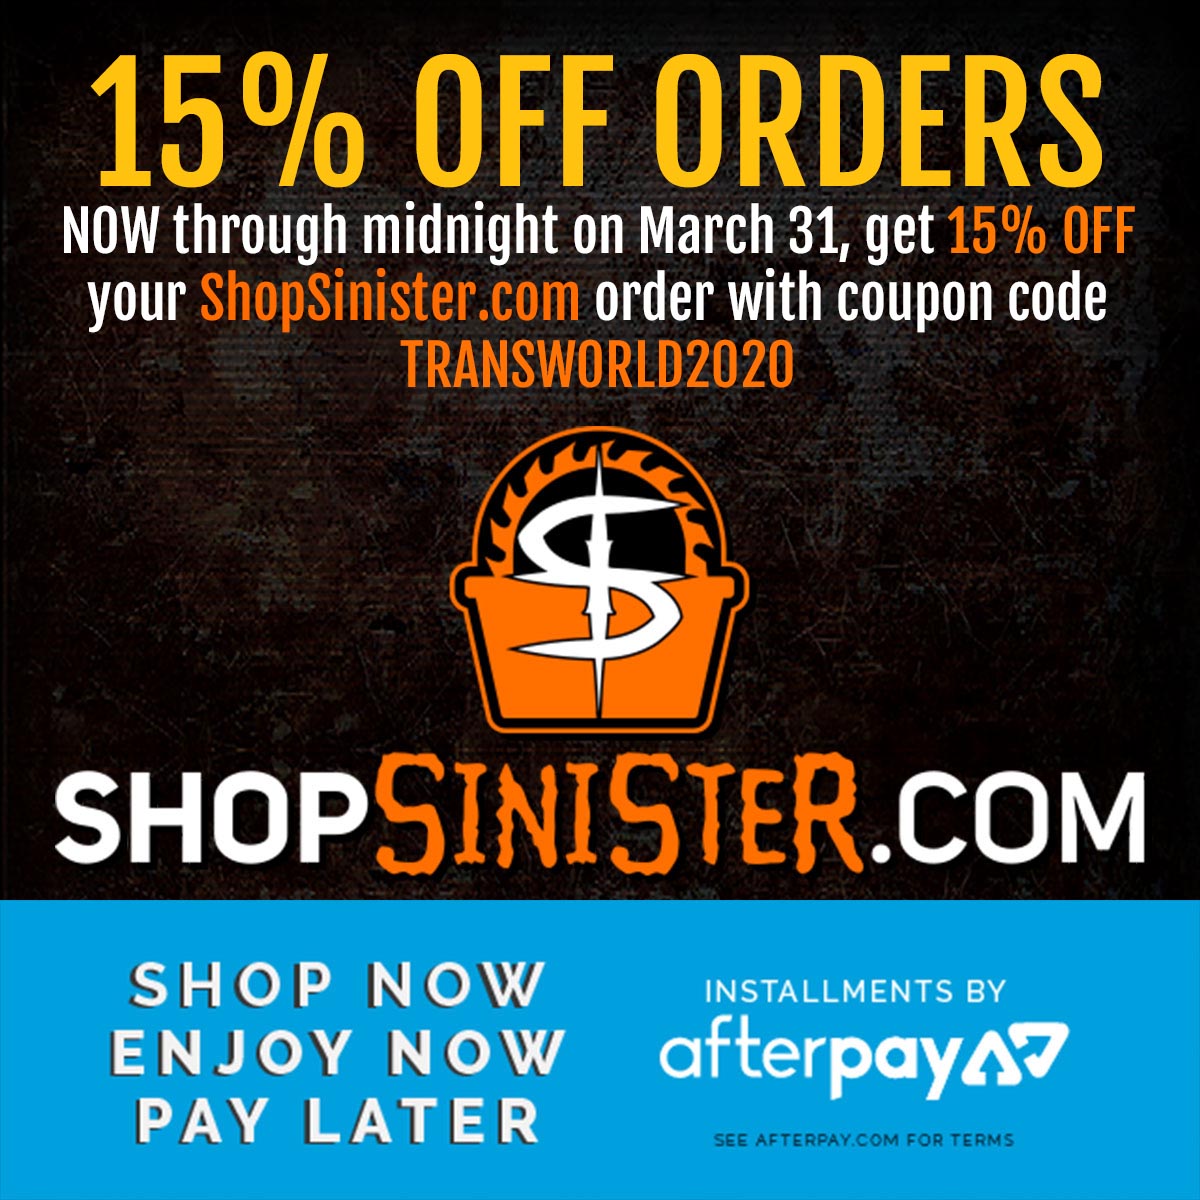 ShopSinister.com Sale